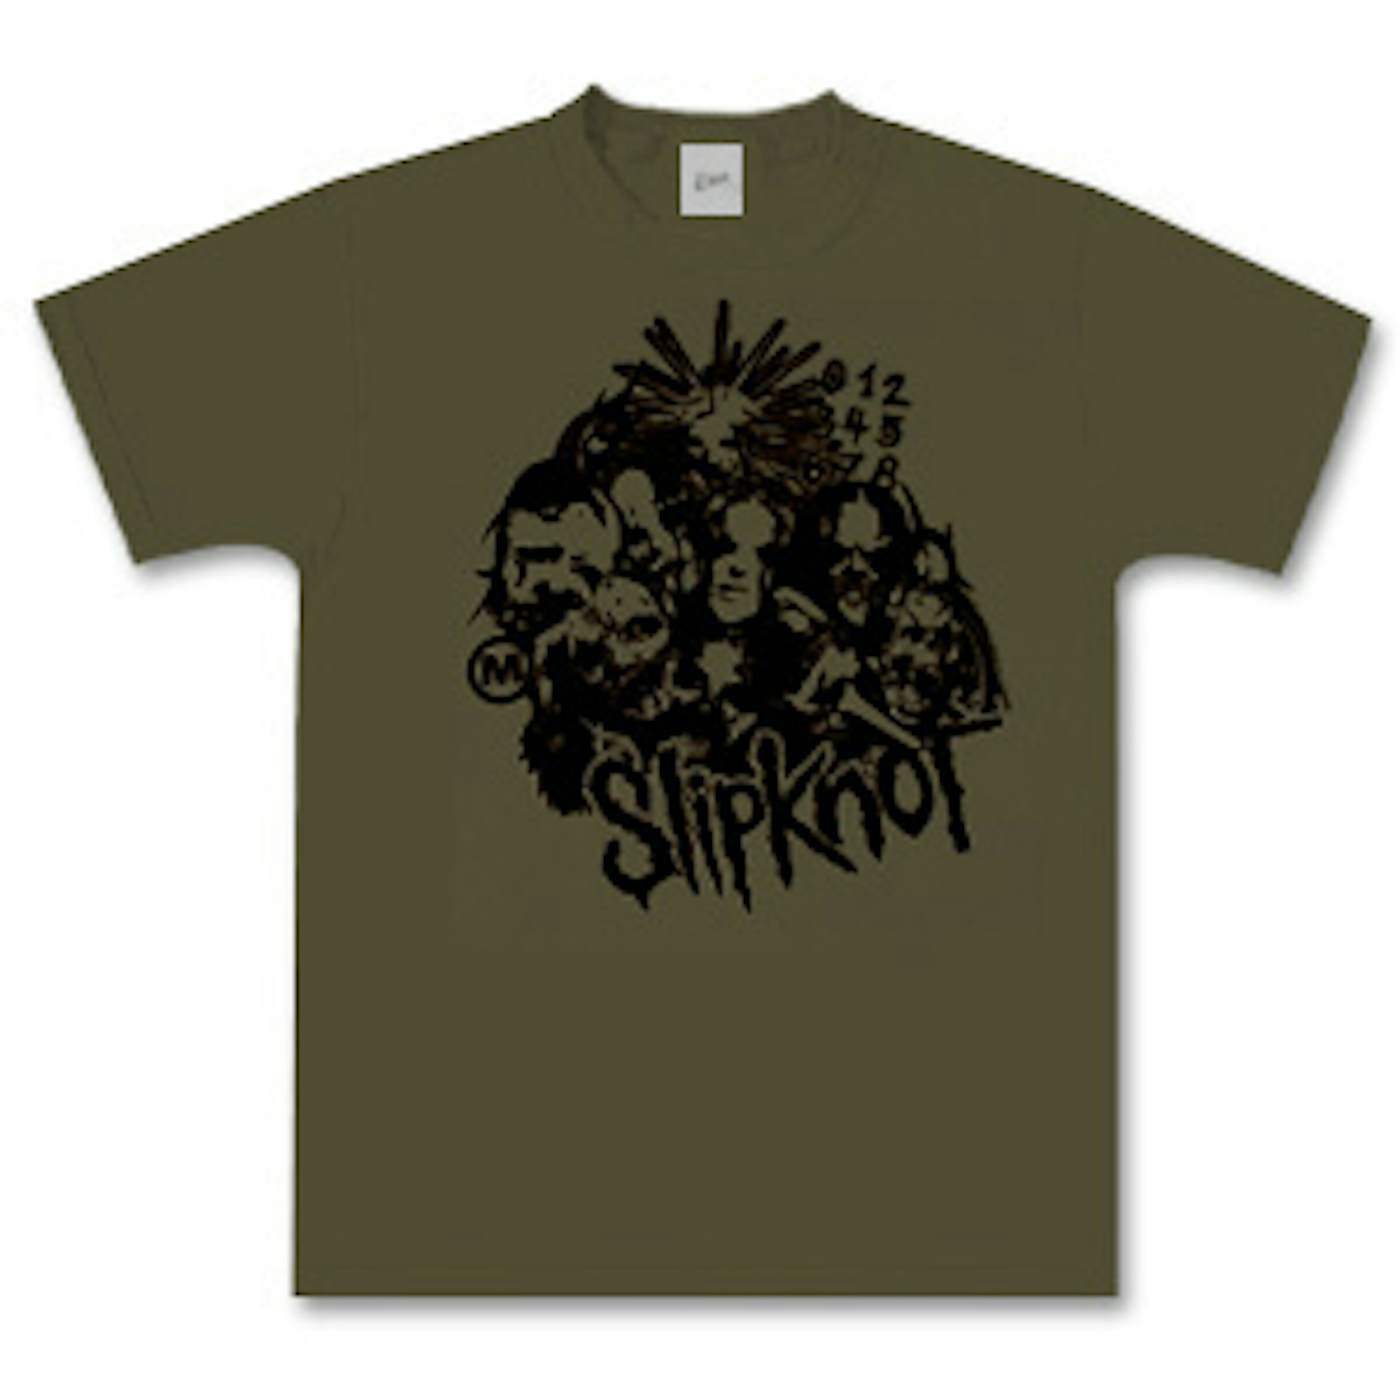 Slipknot Collage 2 T-Shirt